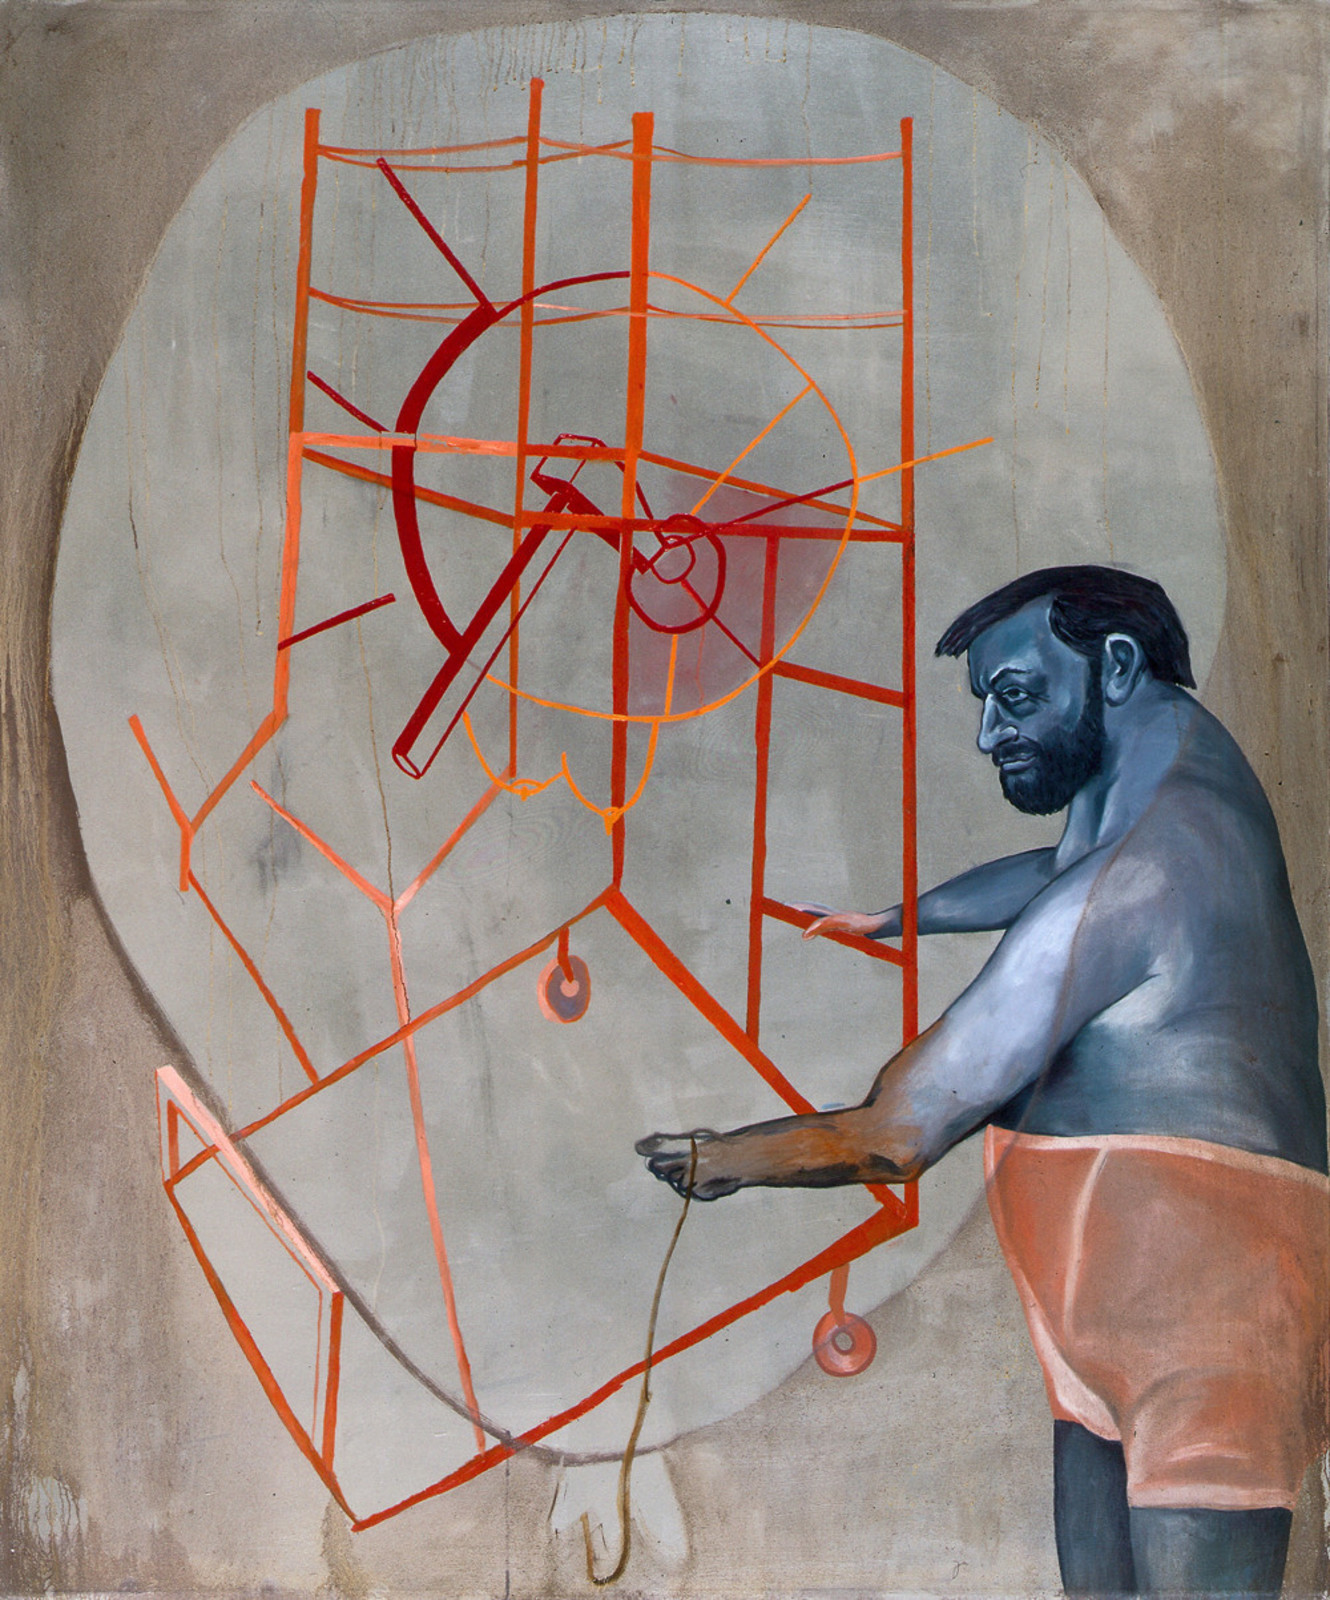 Мартин Киппенбергер.  Без названия, 1988.  Холст, масло. 94,5 x 78 см